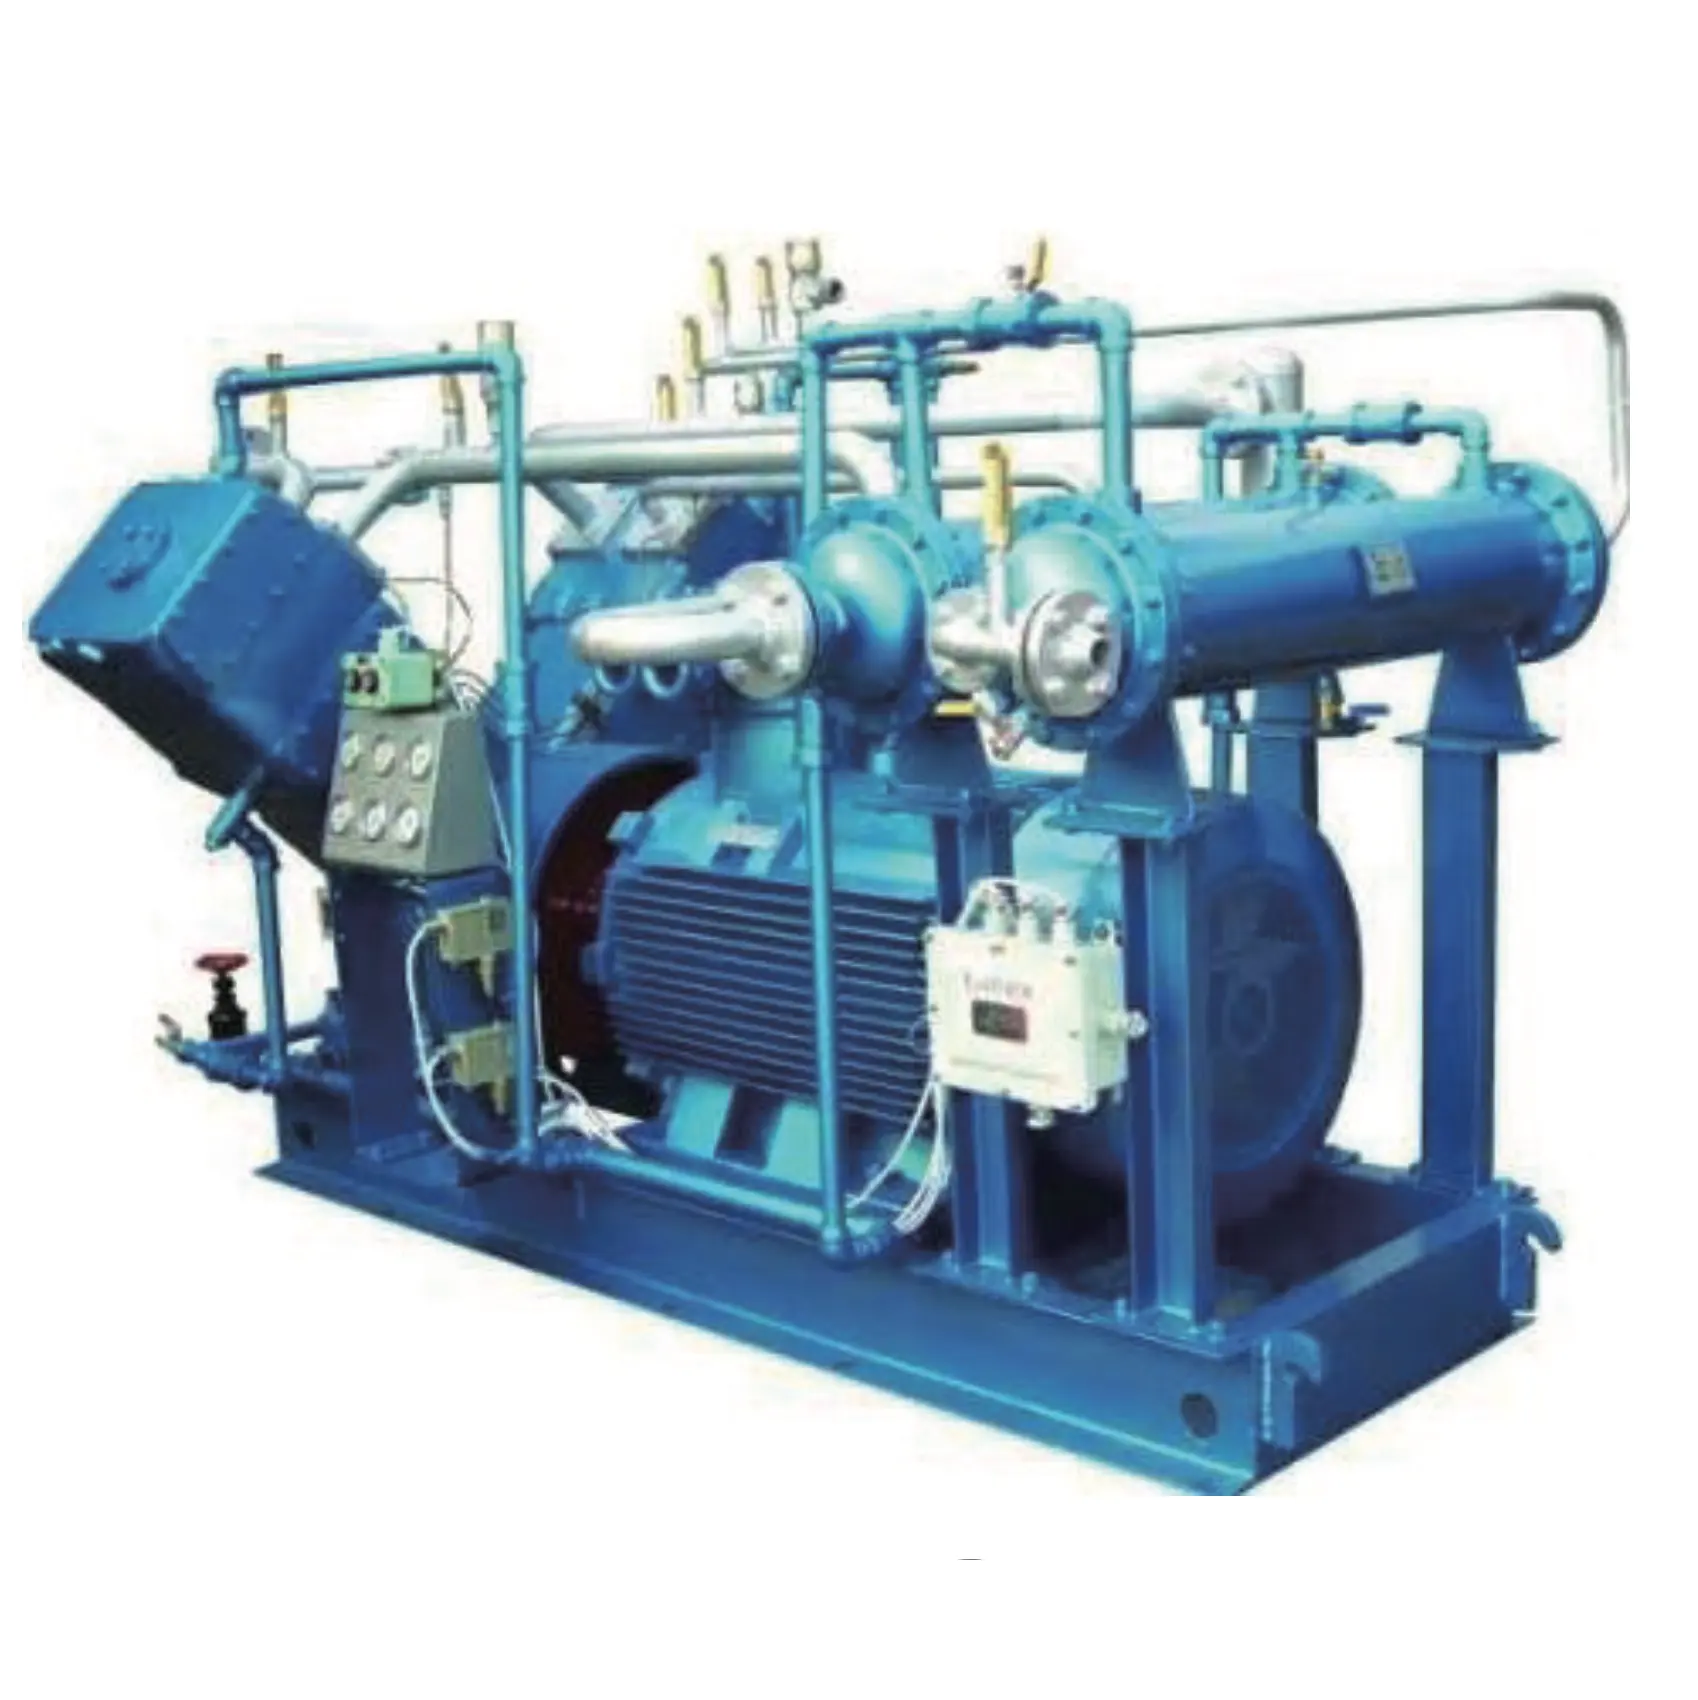 Anpassbarer und vielseitiger Spezial-Gaskompressor mit geringem Wartungsaufwand für Kohlgas